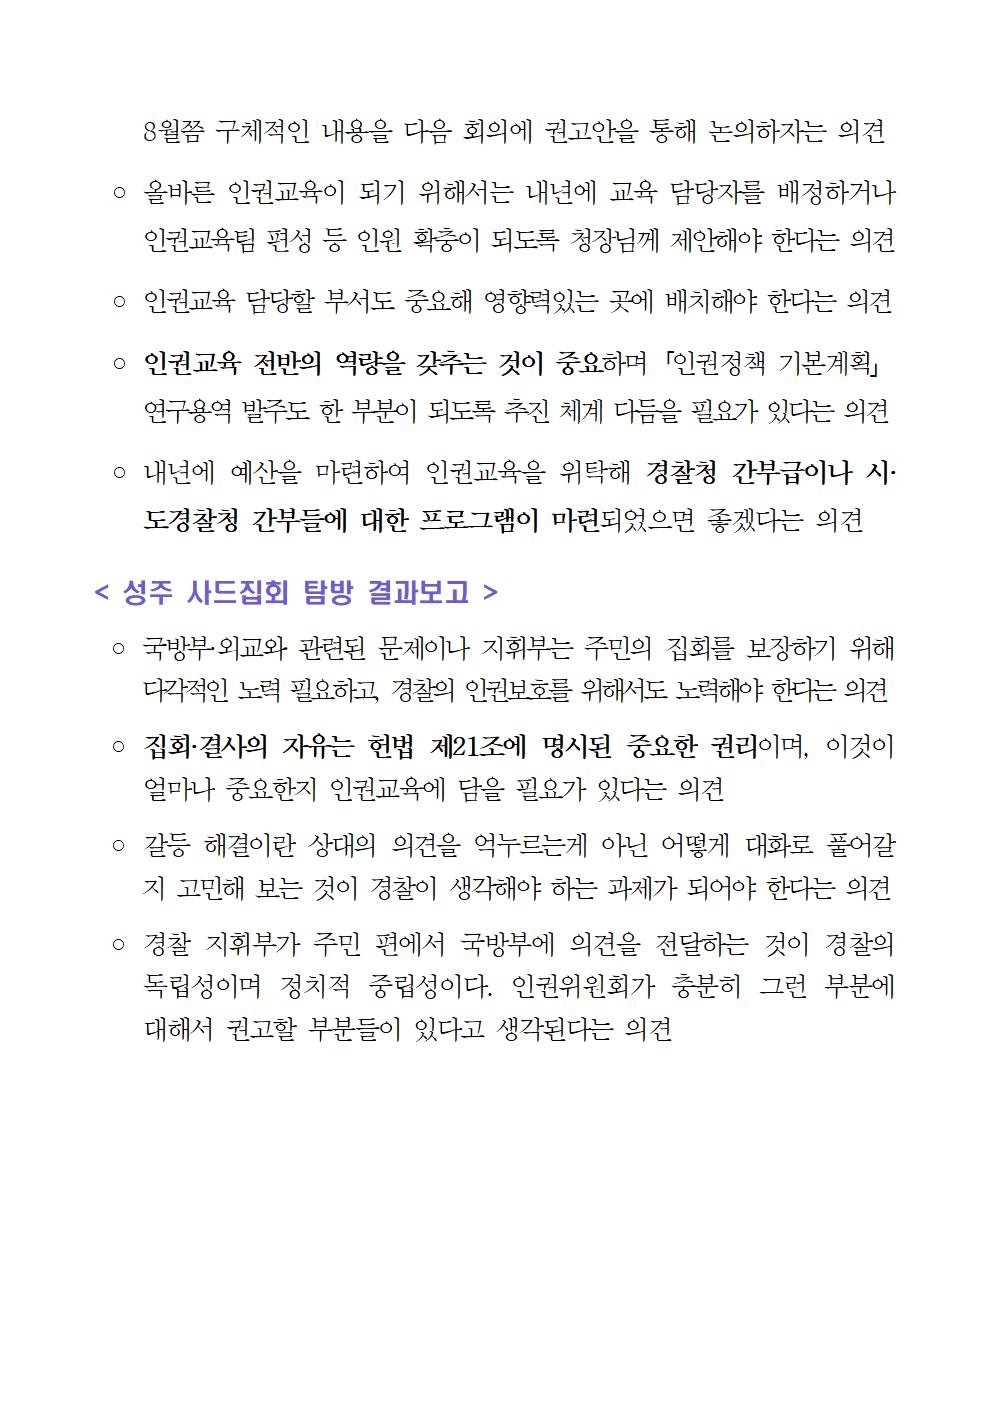 제126차 경찰청 인권위원회 정기회의 개최 및 결과 아래설명